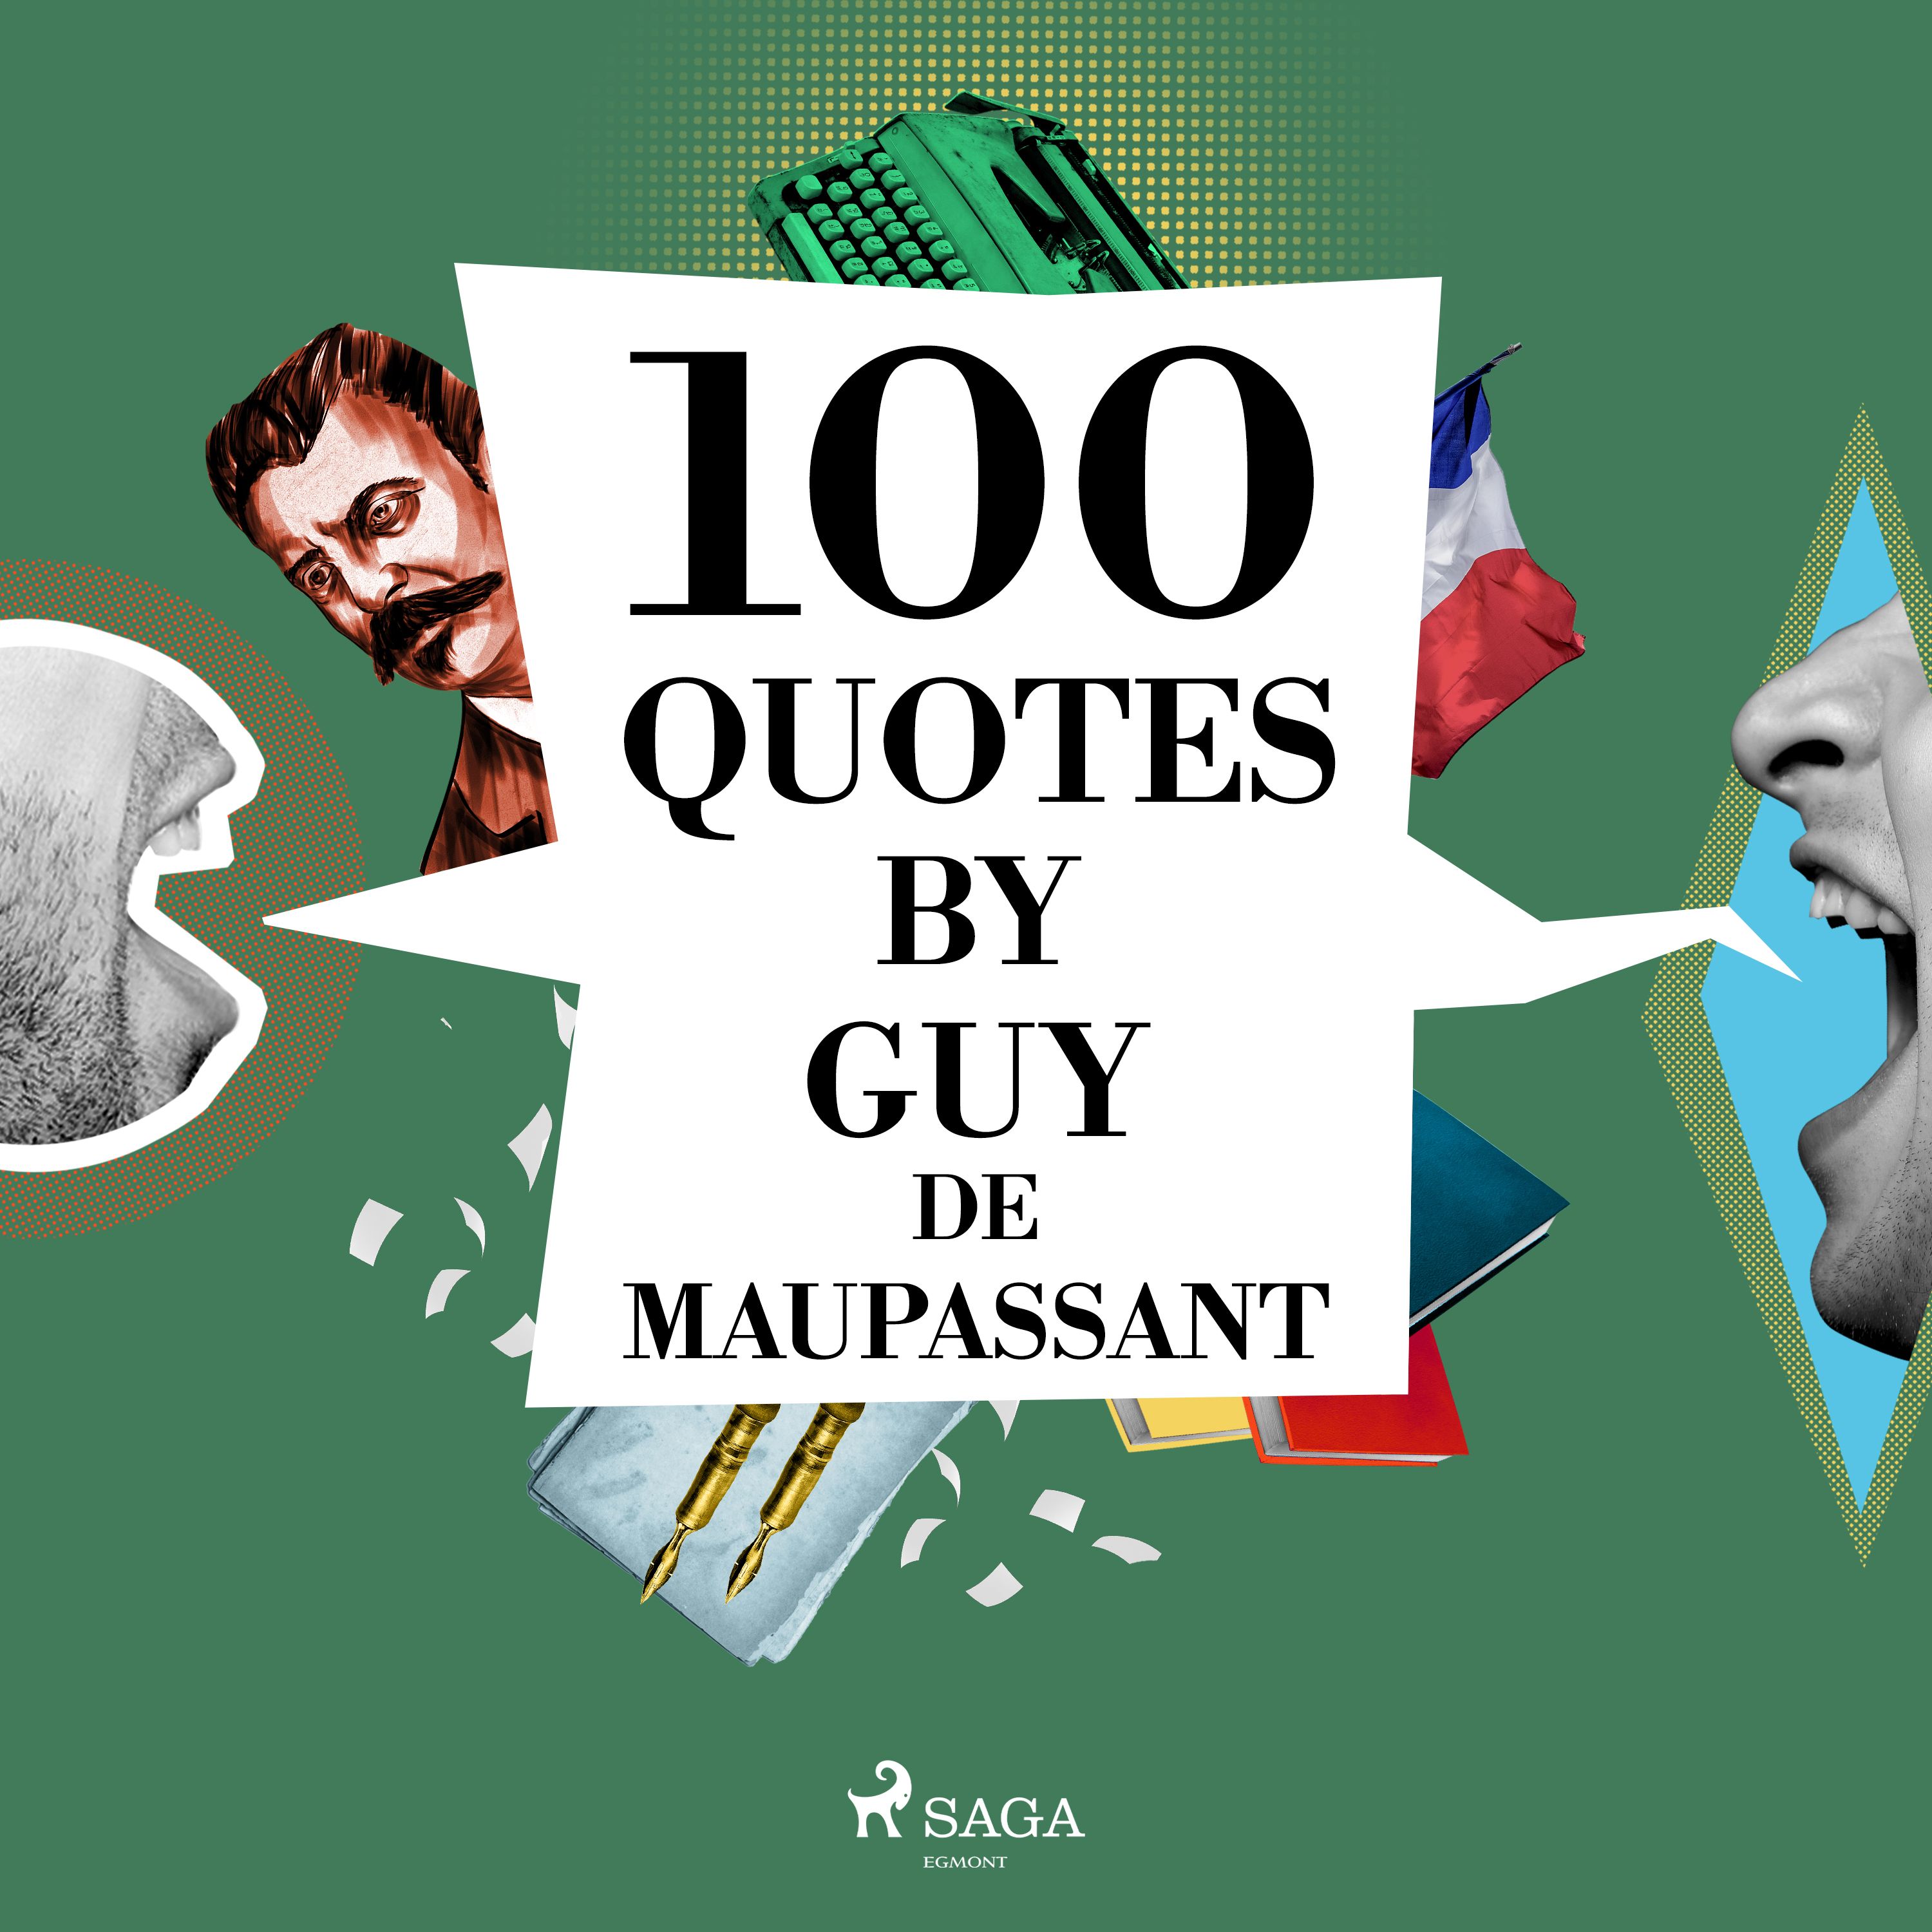 100 Quotes by Guy de Maupassant, audiobook by Guy de Maupassant